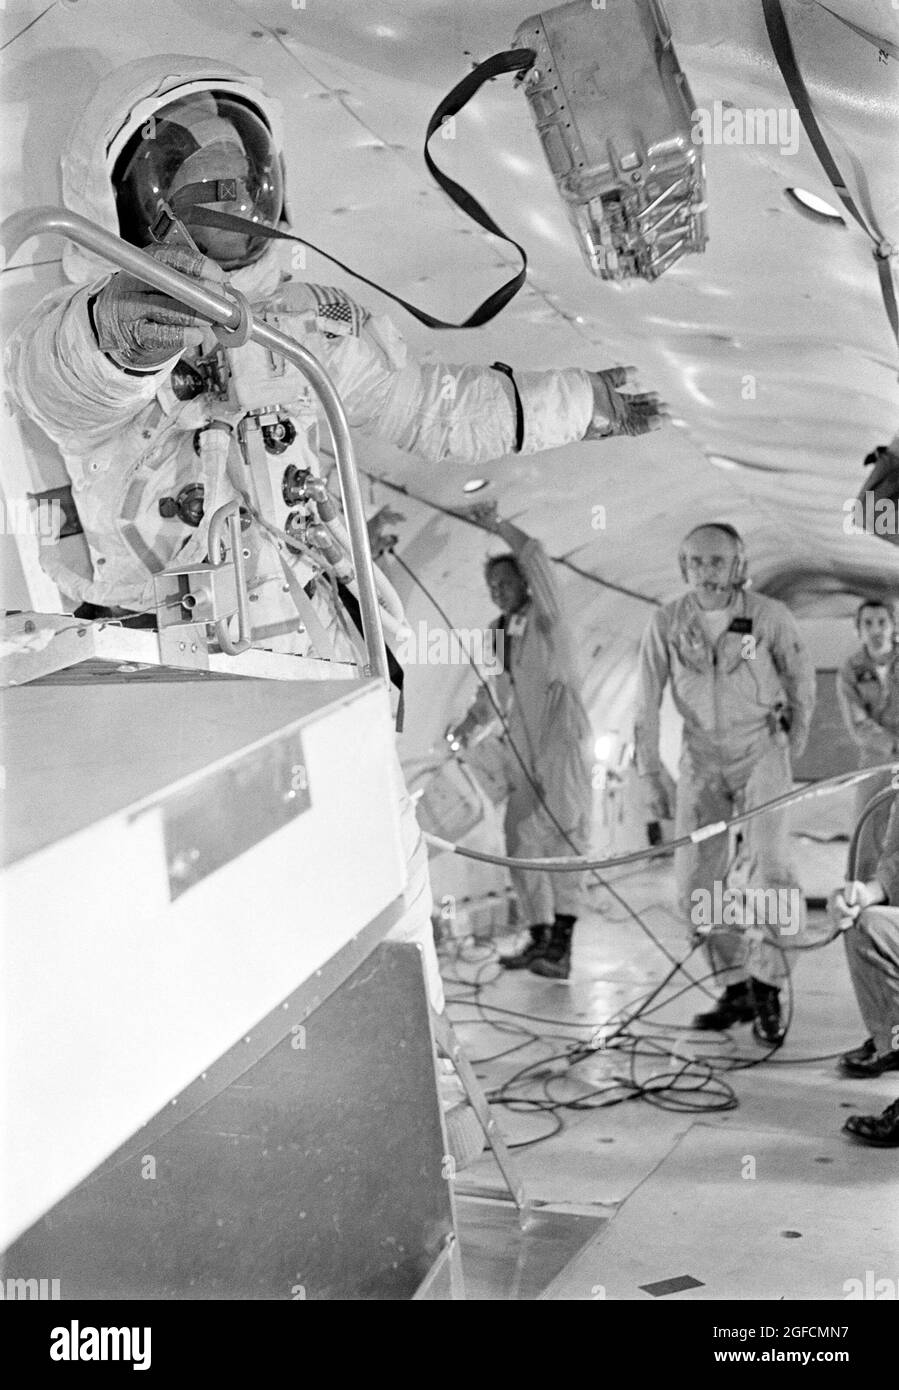 (10. Juli 1969) --- Astronaut Edwin E. Aldrin Jr., Mondmodulpilot der Apollo 11 Mondlandemission, nimmt an einem lunaren Extravehicular-Aktivitätstraining unter Schwerelosigkeit an Bord eines US Air Force KC-135 Düsenflugzeugs vom nahe gelegenen Patrick Air Force Base Teil. Aldrin trägt eine Extravehicular Mobility Unit, die Art von Ausrüstung, die er auf der Mondoberfläche tragen wird. Stockfoto